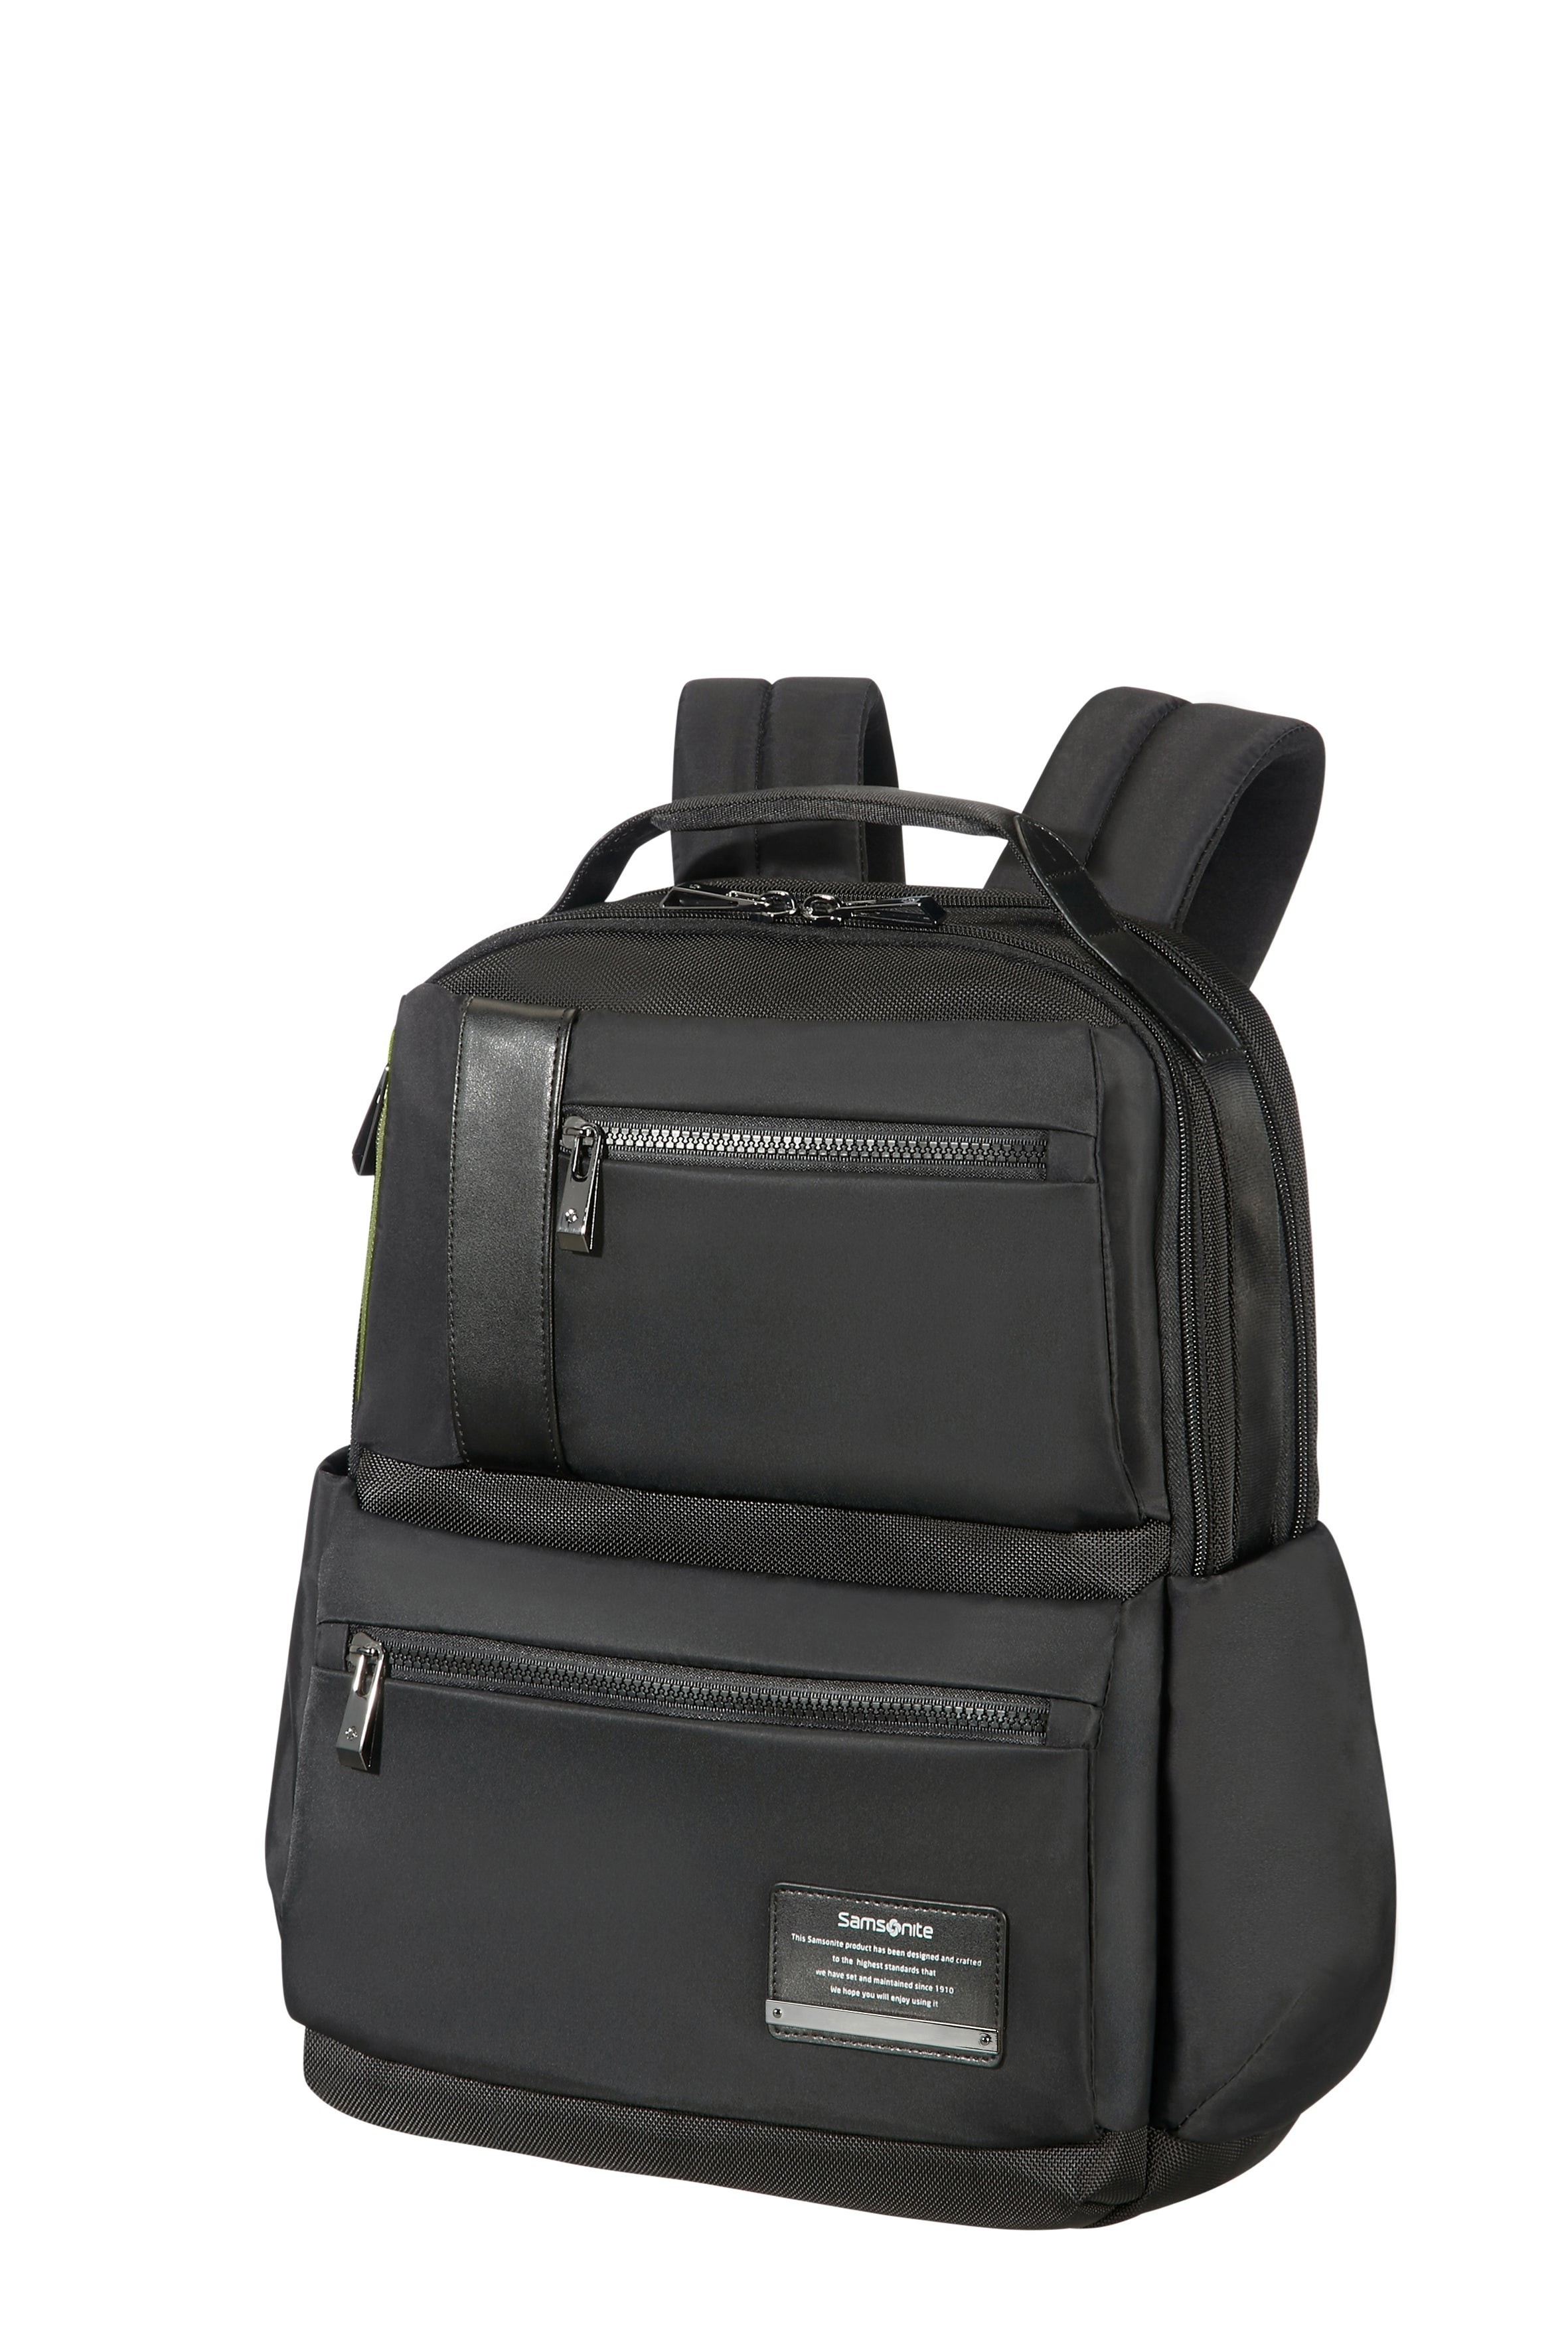 Openroad 14.1" Laptop Backpack Black